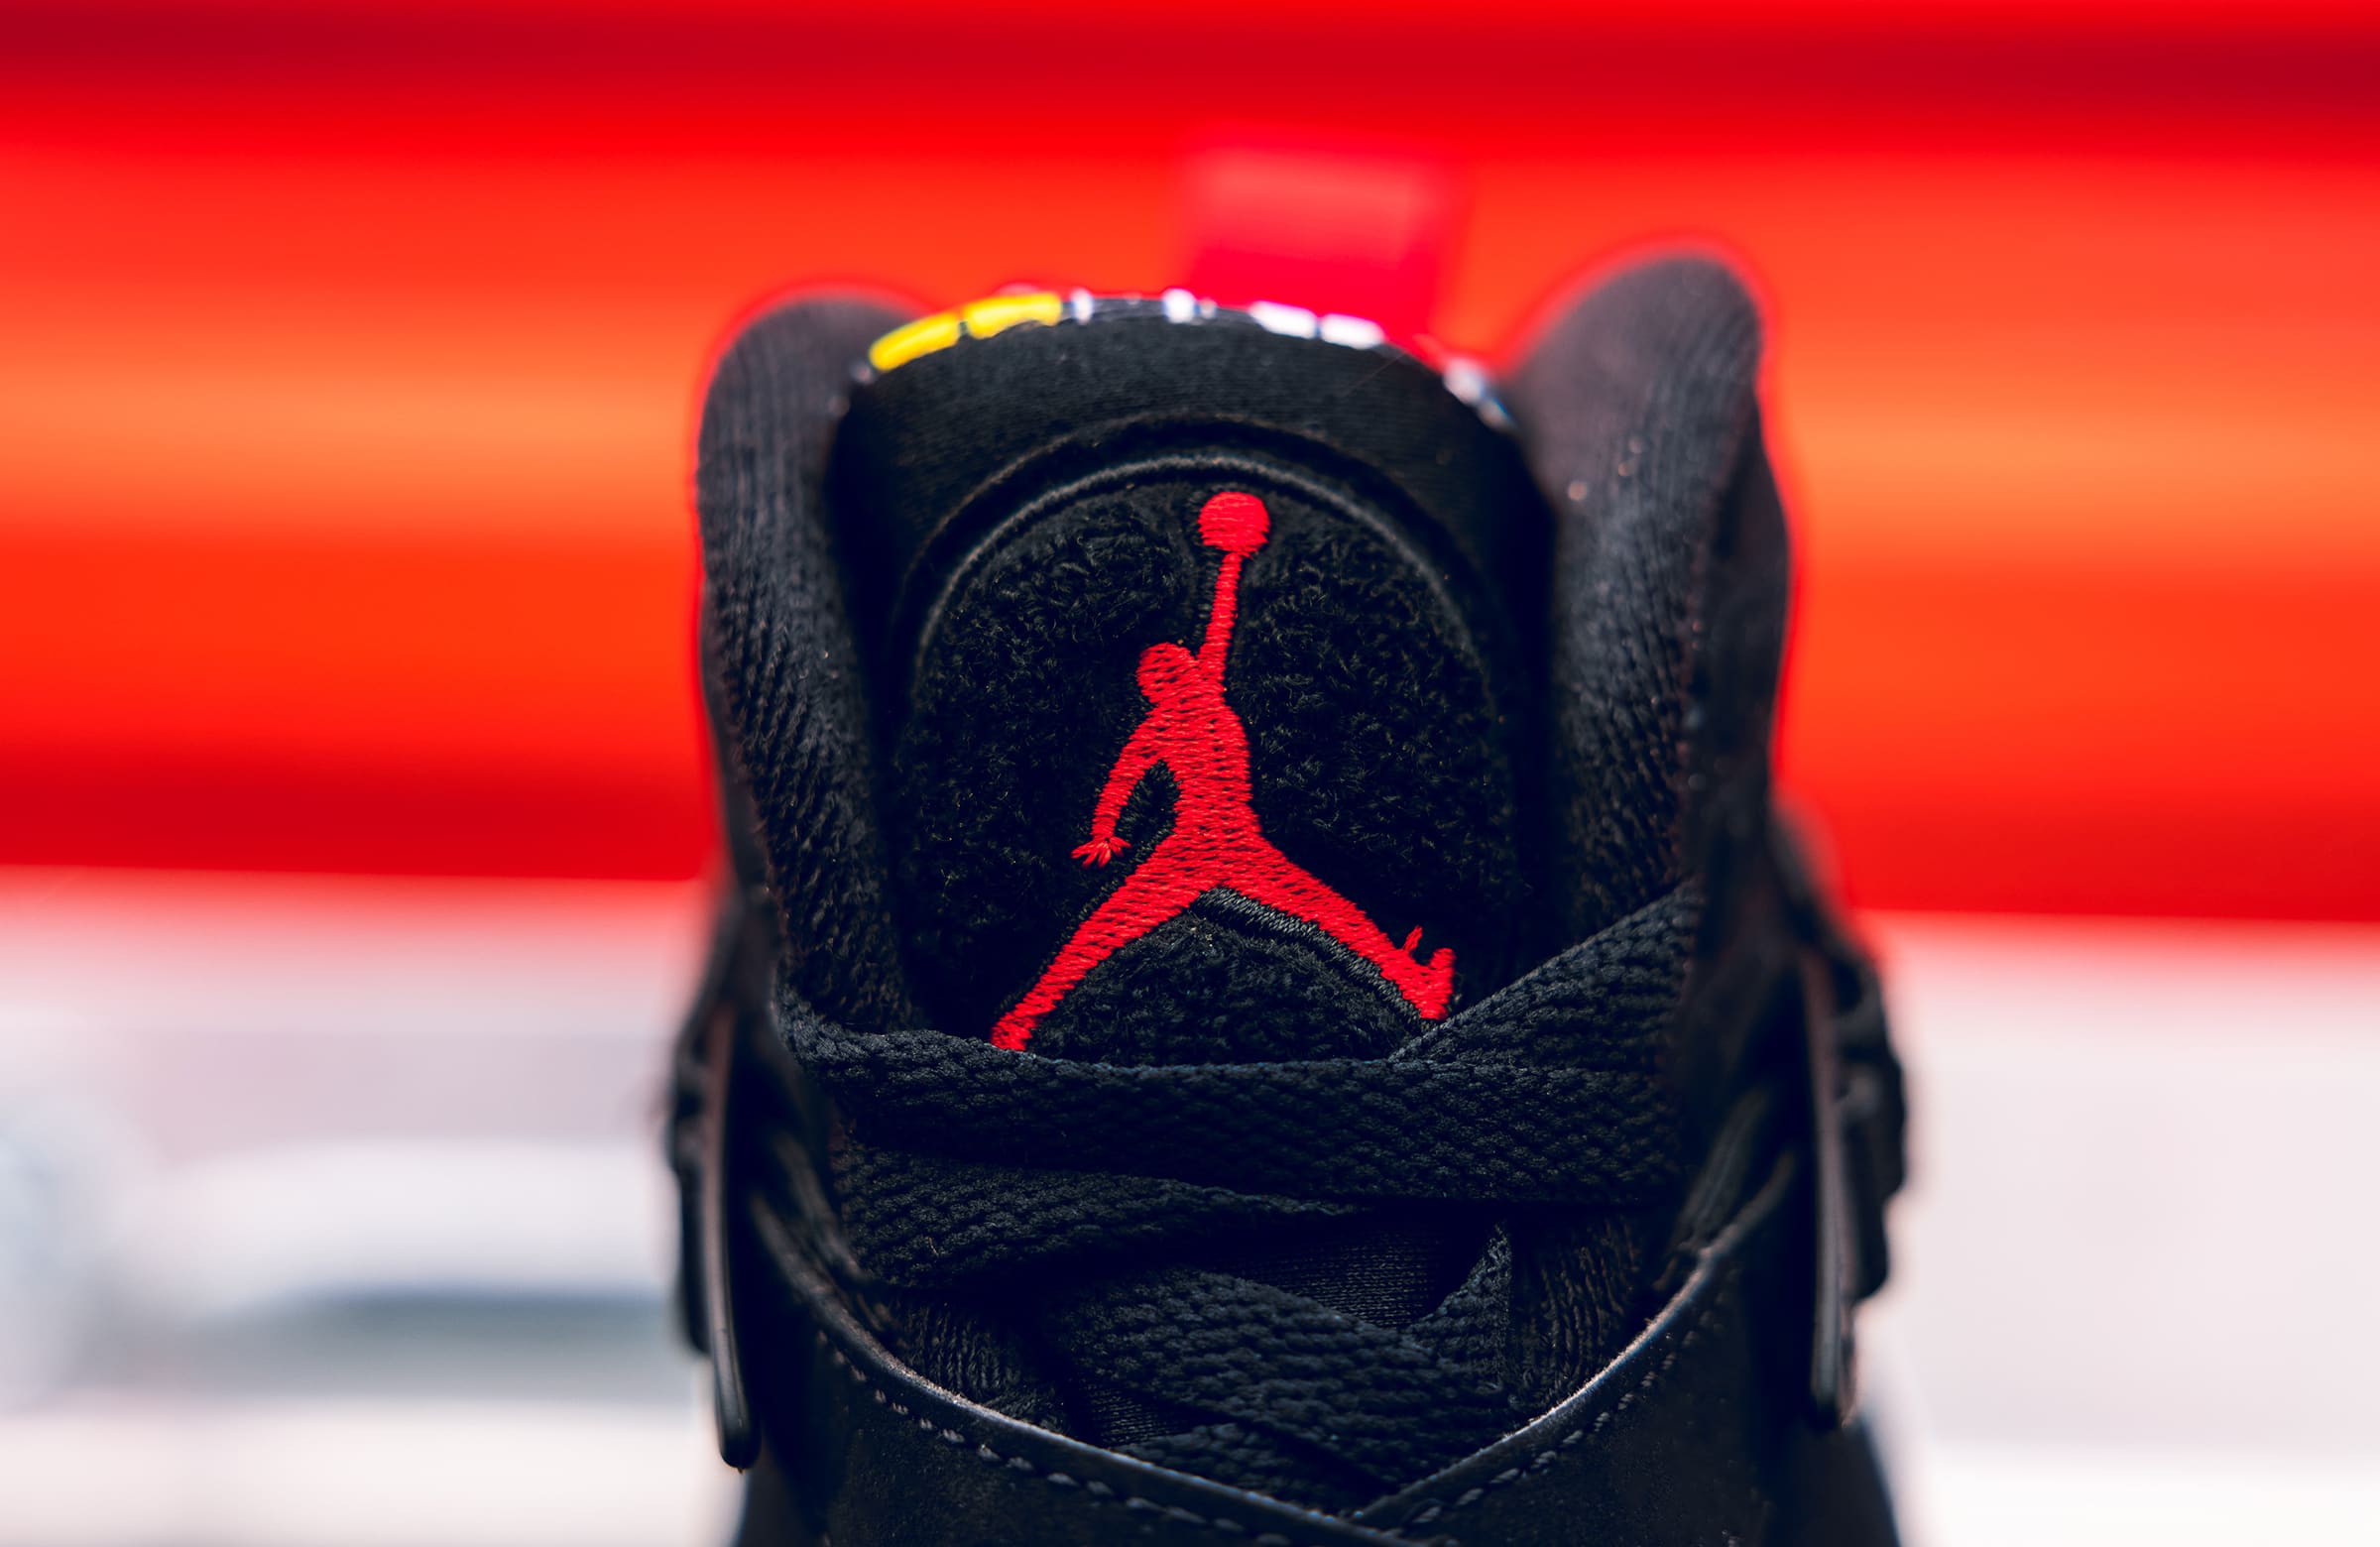 DTLR on X: Restock 🚨 The Men's Air #Jordan 13 'Playoffs' has